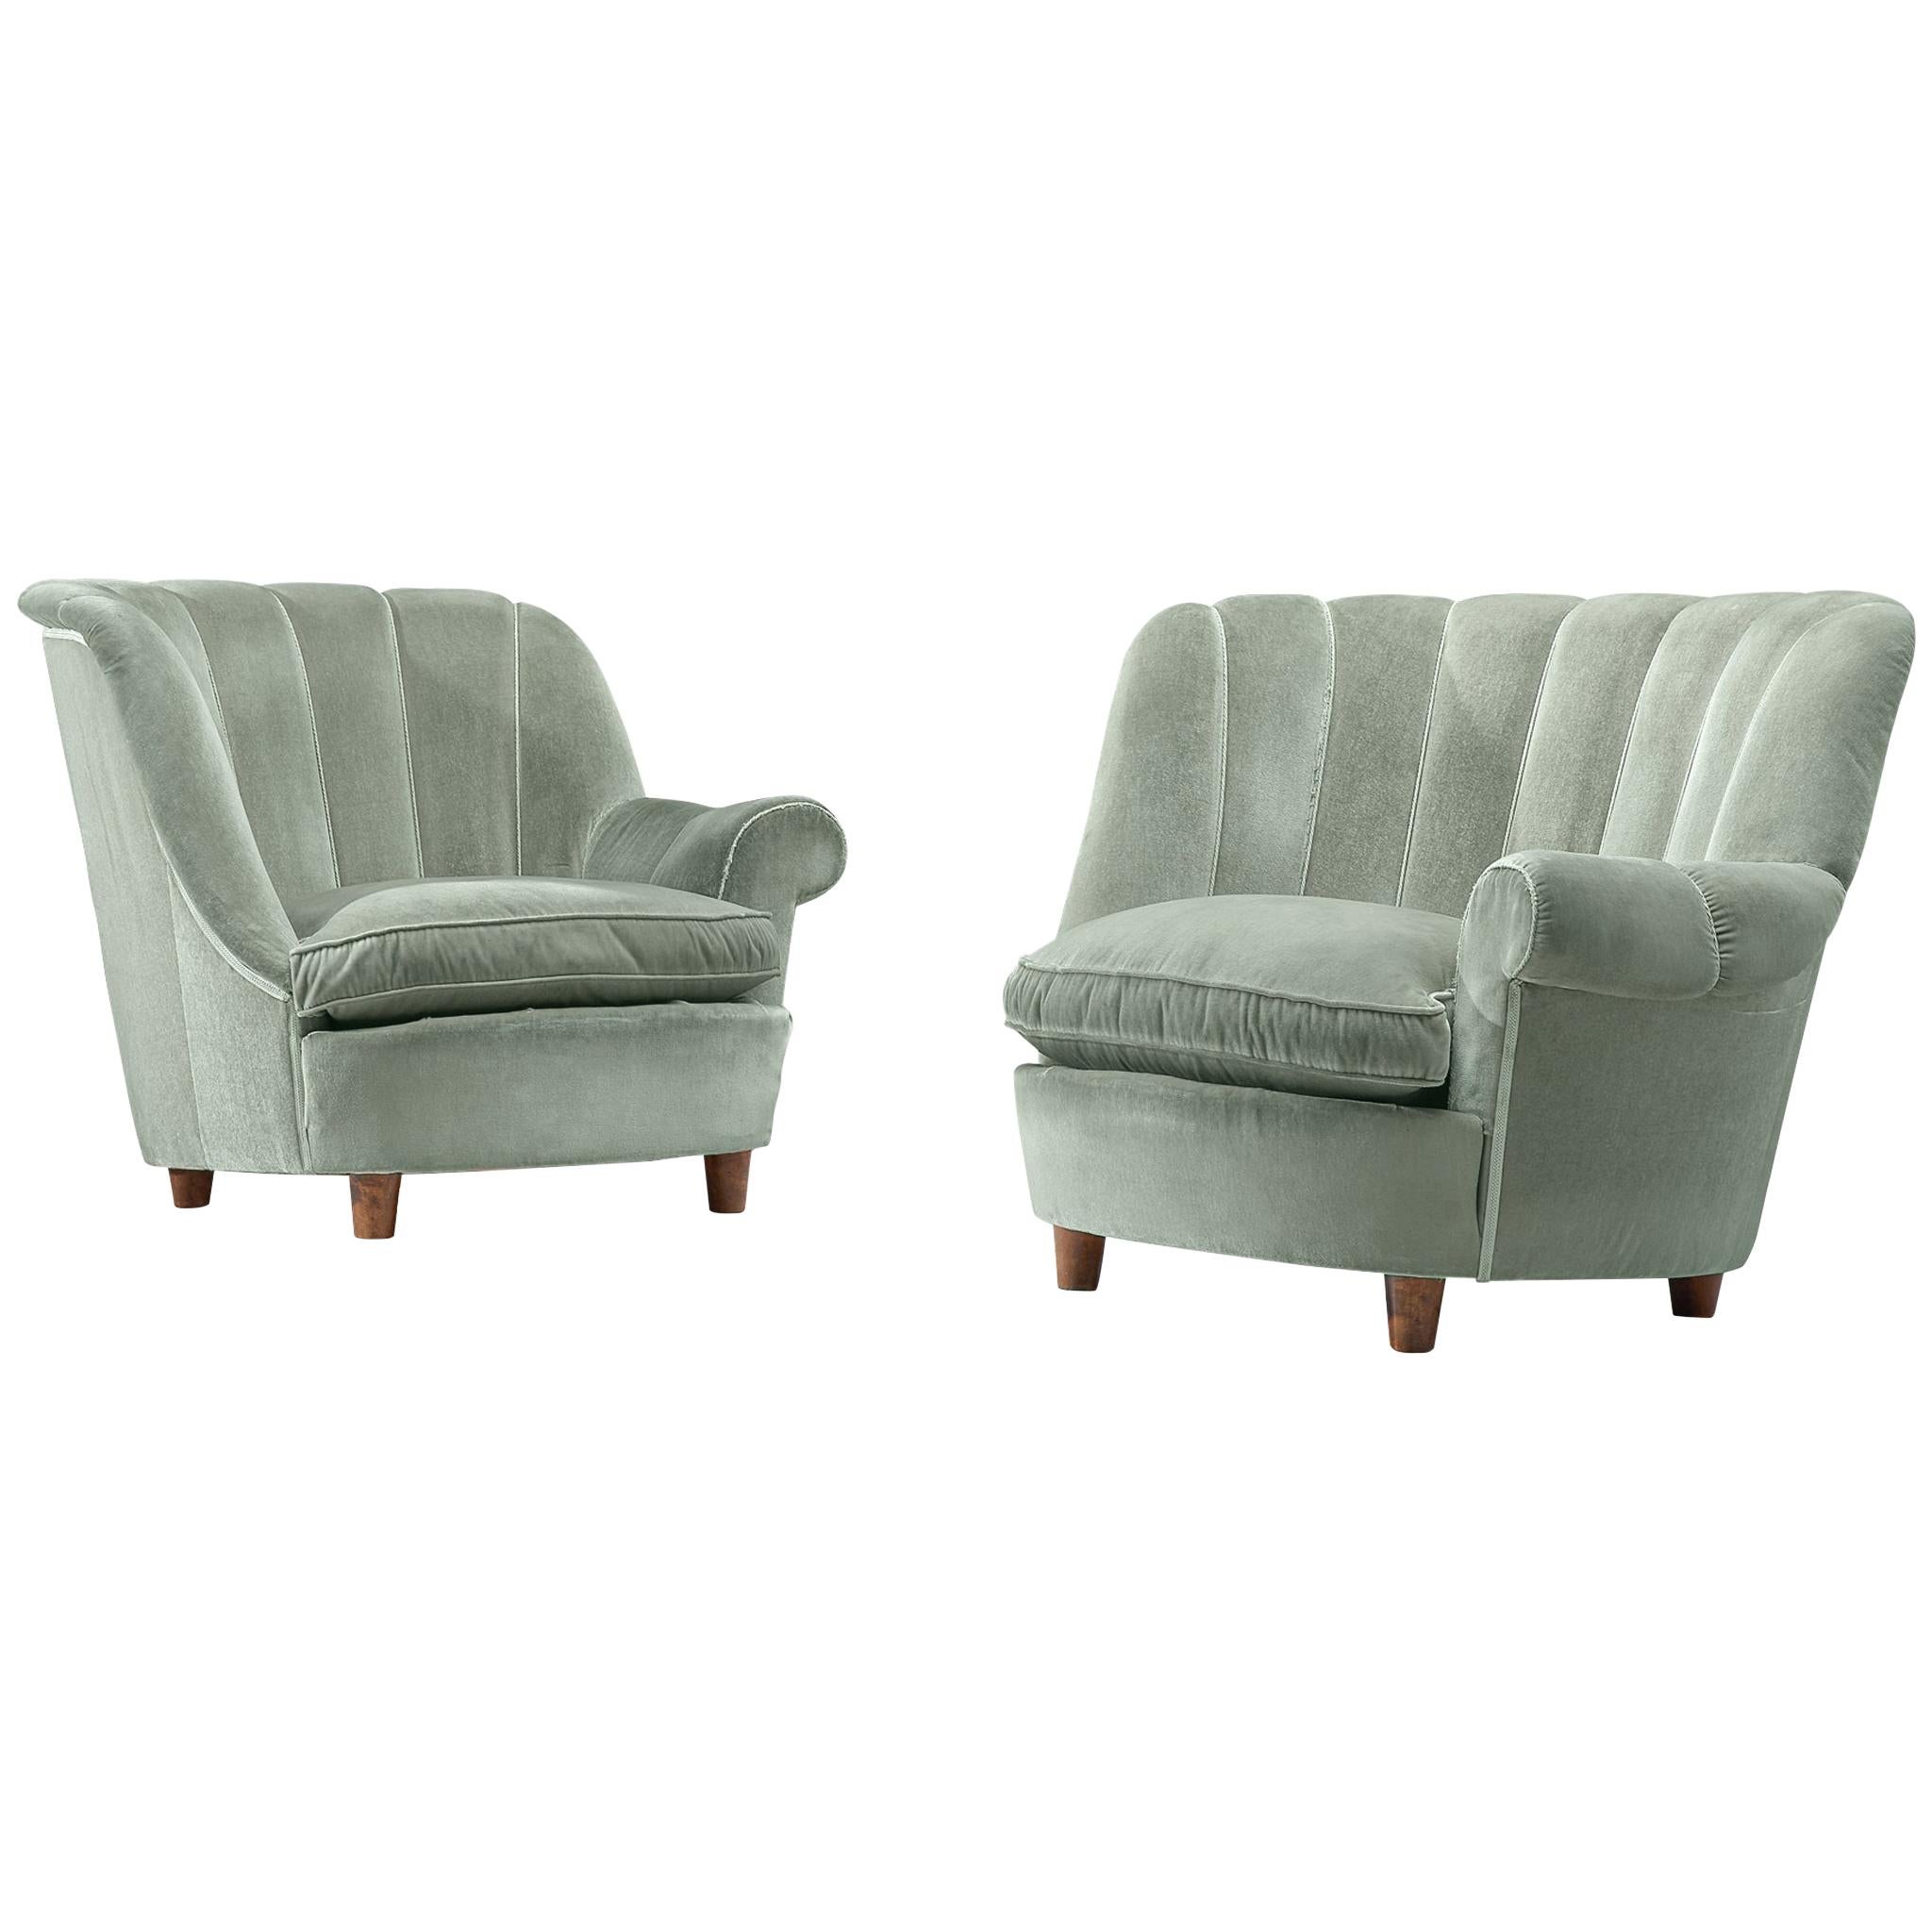 Carl Malmsten "Redet" Easy Chairs in Soft Mint Velvet